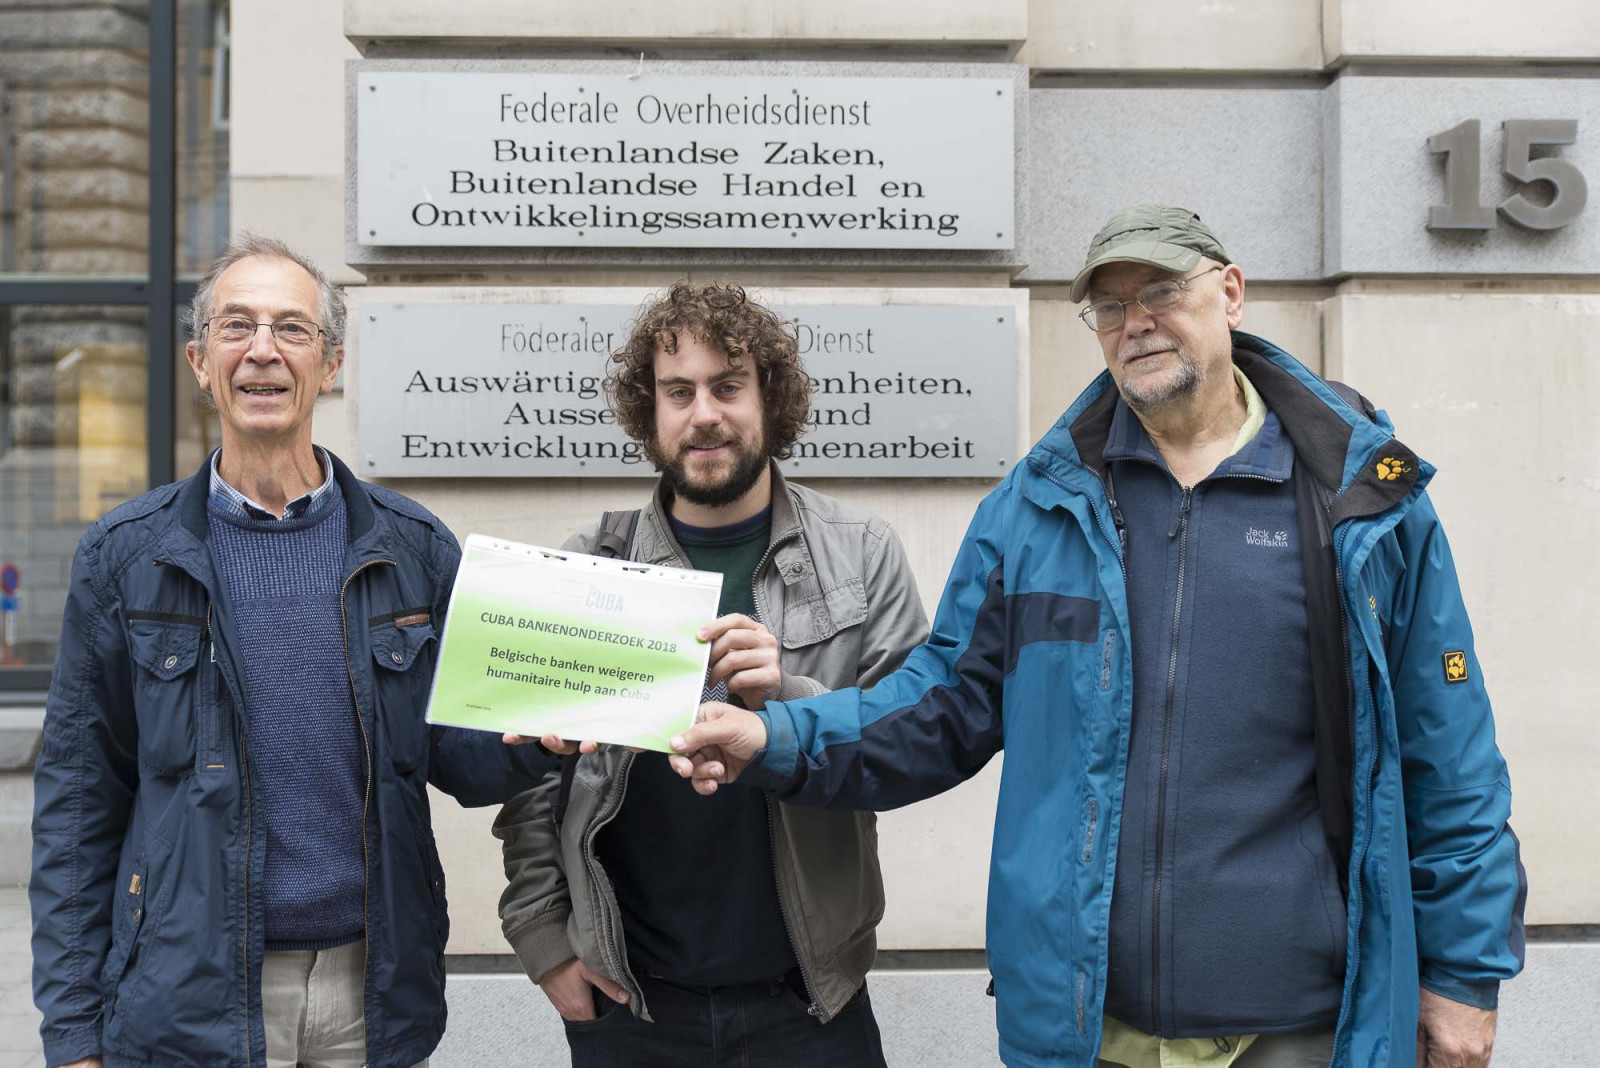 Belgische banken houden humanitaire hulp aan Cuba tegen